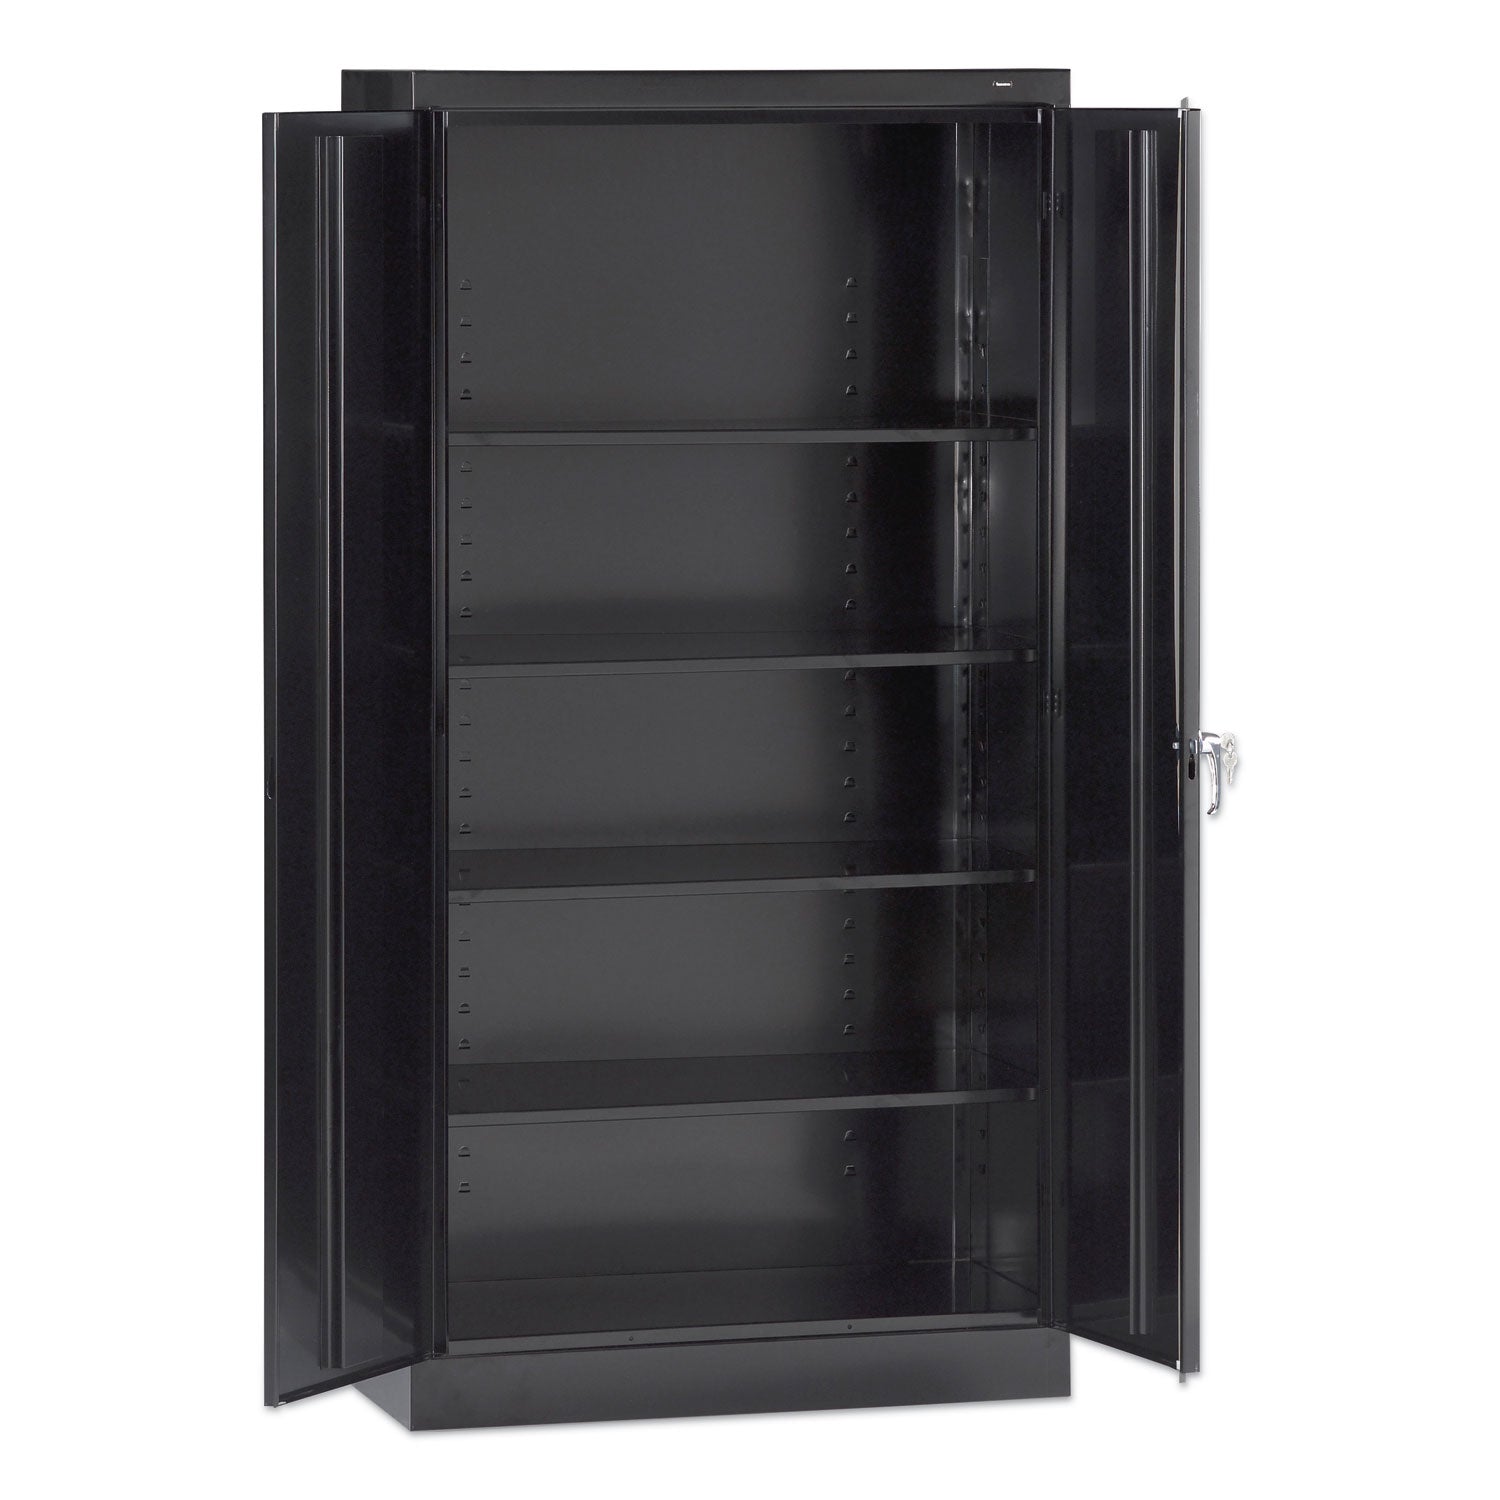 72-high-standard-cabinet-assembled-30w-x-15d-x-72h-black_tnn7215blk - 1